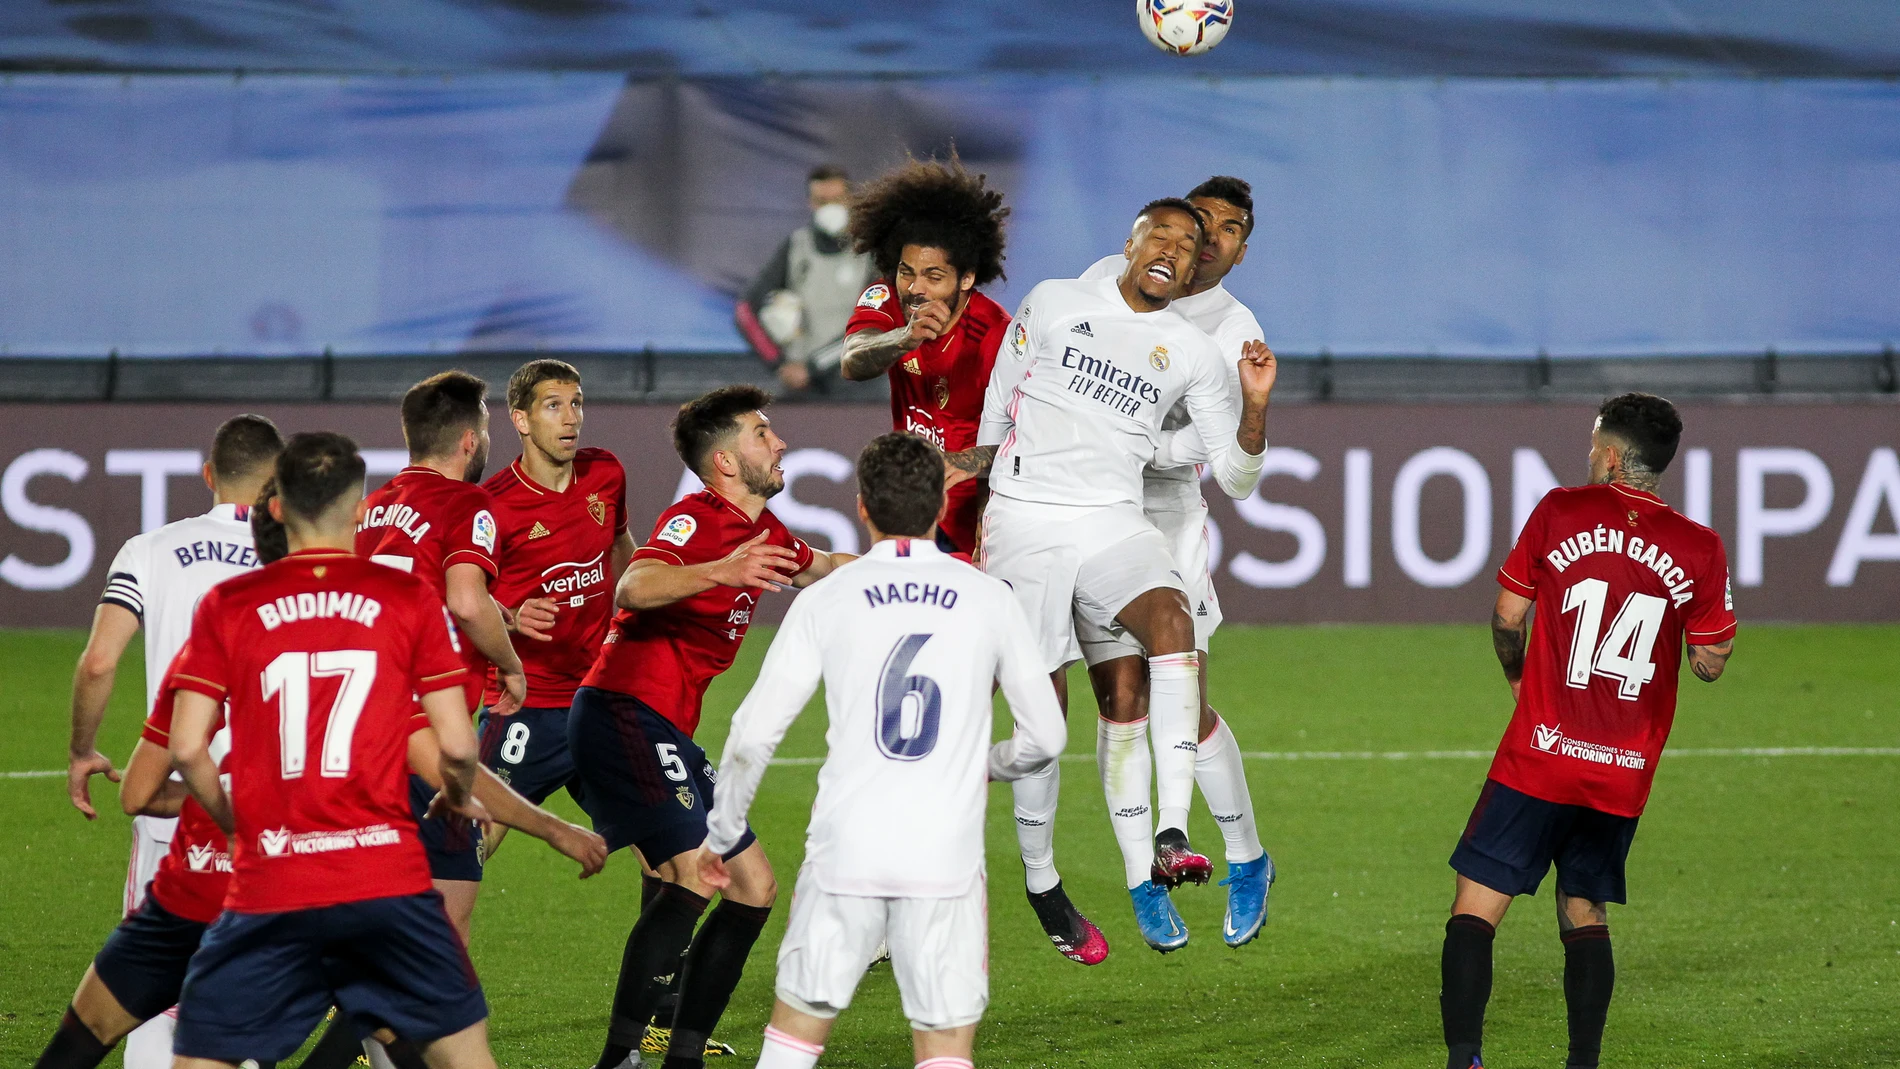 Militao metió de cabeza el primer gol del Real Madrid contra Osasuna en LaLIga